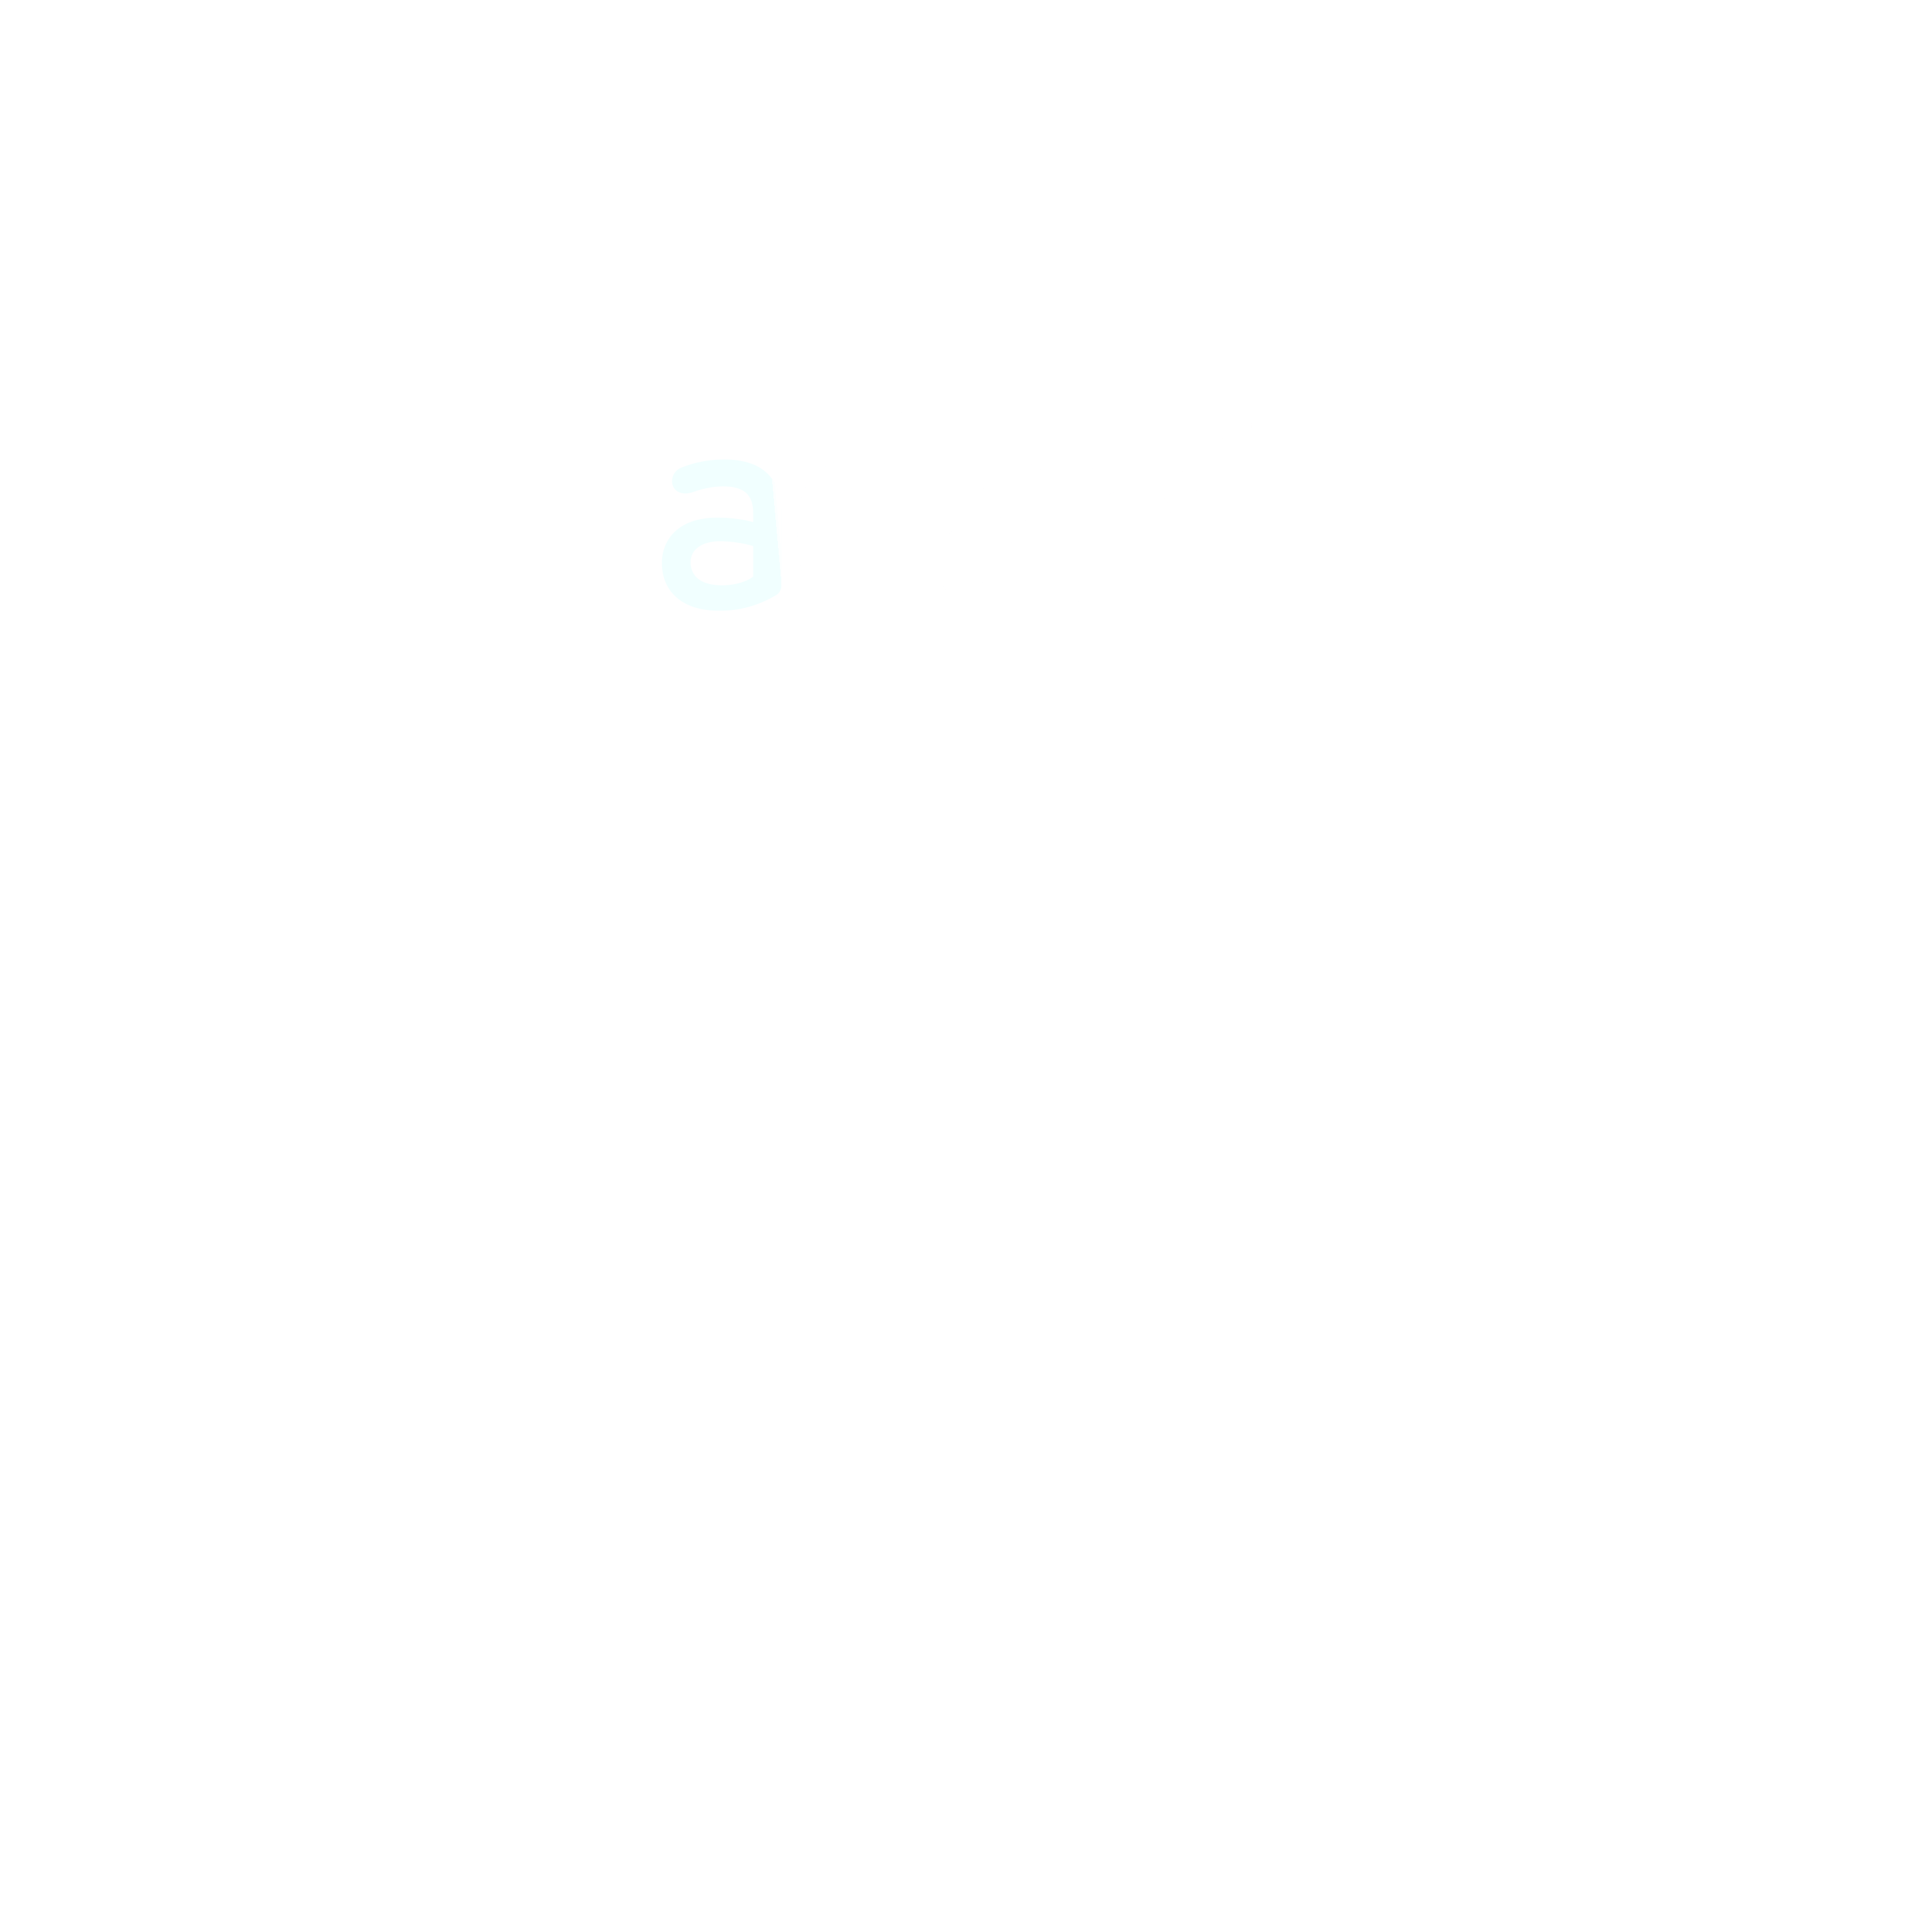 Jaipur Airport Logo Transparent Picture